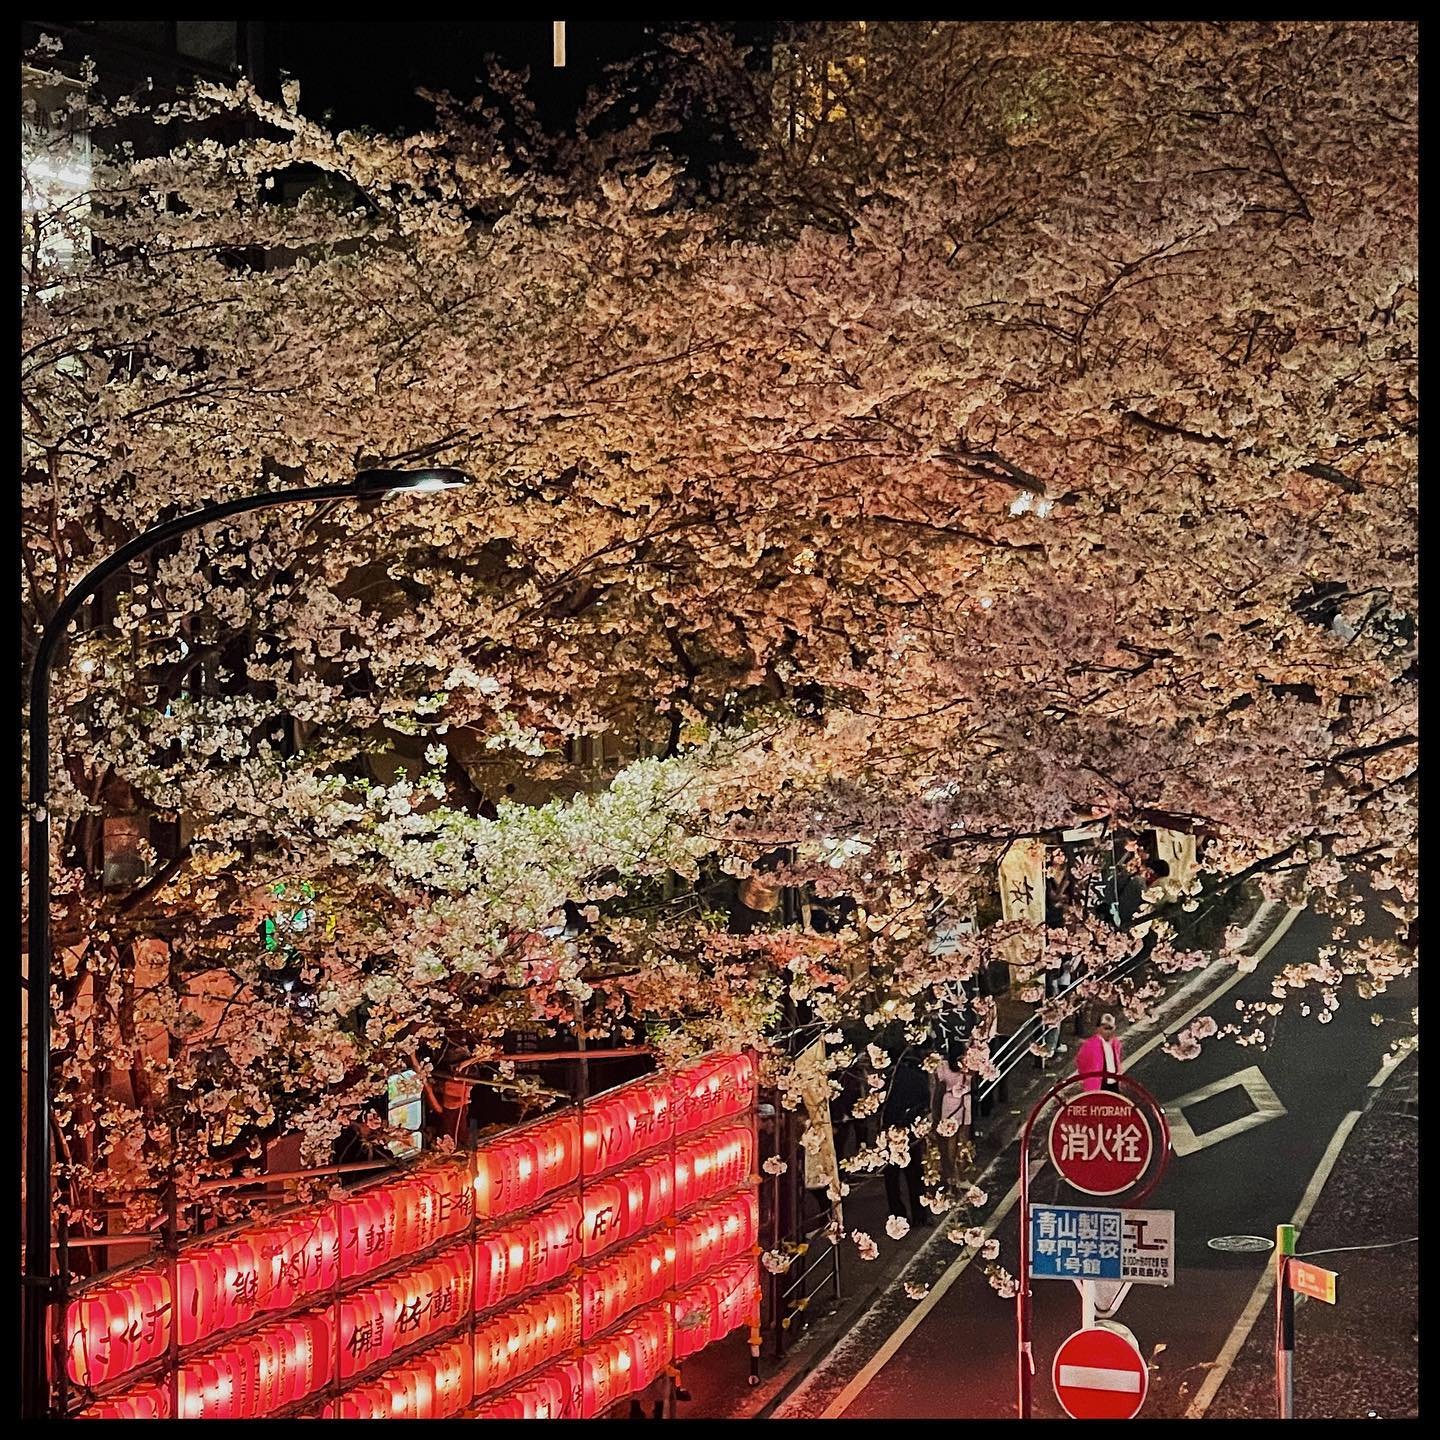 Sakura Street